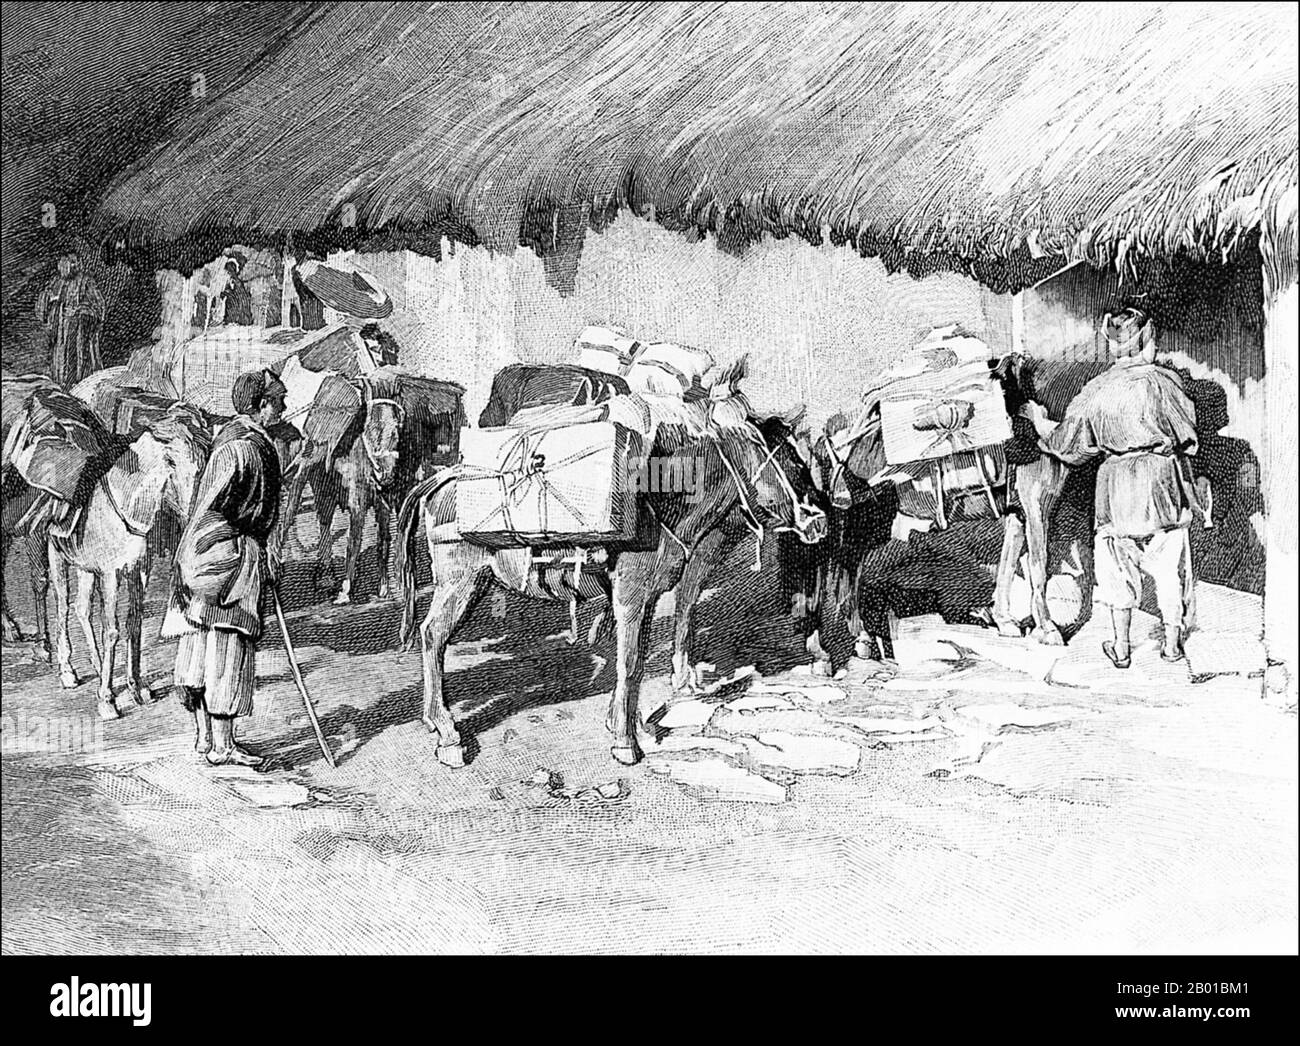 Cina: Haw Caravan sulle colline del Triangolo d'Oro. Illustrazione, c. 1895. La Tea Horse Road (Cha ma Dao) era una rete di sentieri carovani che si snodavano tra le montagne di Yunnan, Sichuan e Tibet nella Cina sudoccidentale. È anche a volte indicato come la strada della seta meridionale e l'antica strada del cavallo del tè. Circa mille anni fa, l'antica via del tè era un collegamento commerciale tra Yunnan, una delle prime regioni produttrici di tè, e l'India attraverso la Birmania, il Tibet e la Cina centrale attraverso la provincia del Sichuan. Oltre al tè, le carovane portavano sale. Foto Stock